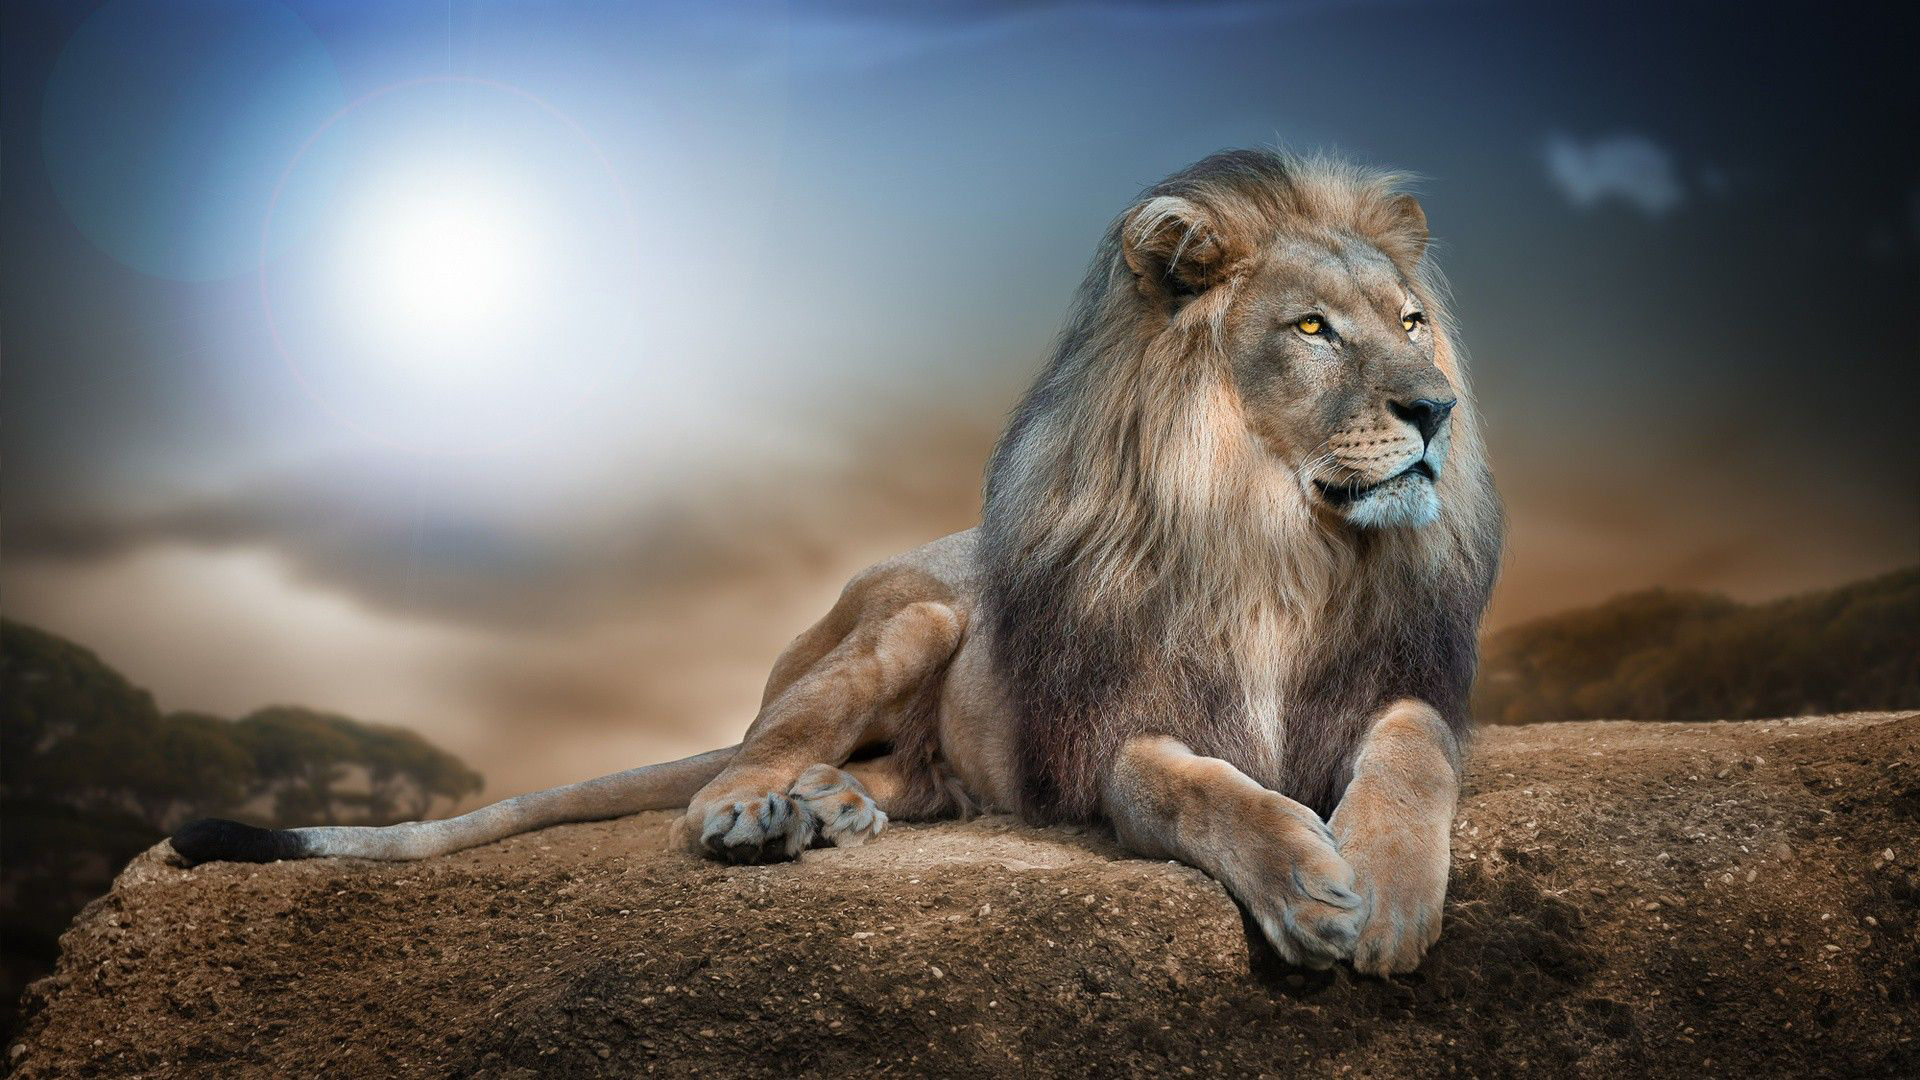 Yellow Eyes Fur Lion Is Sitting On Rock In Blue Sky Wallpaper 2K Lion